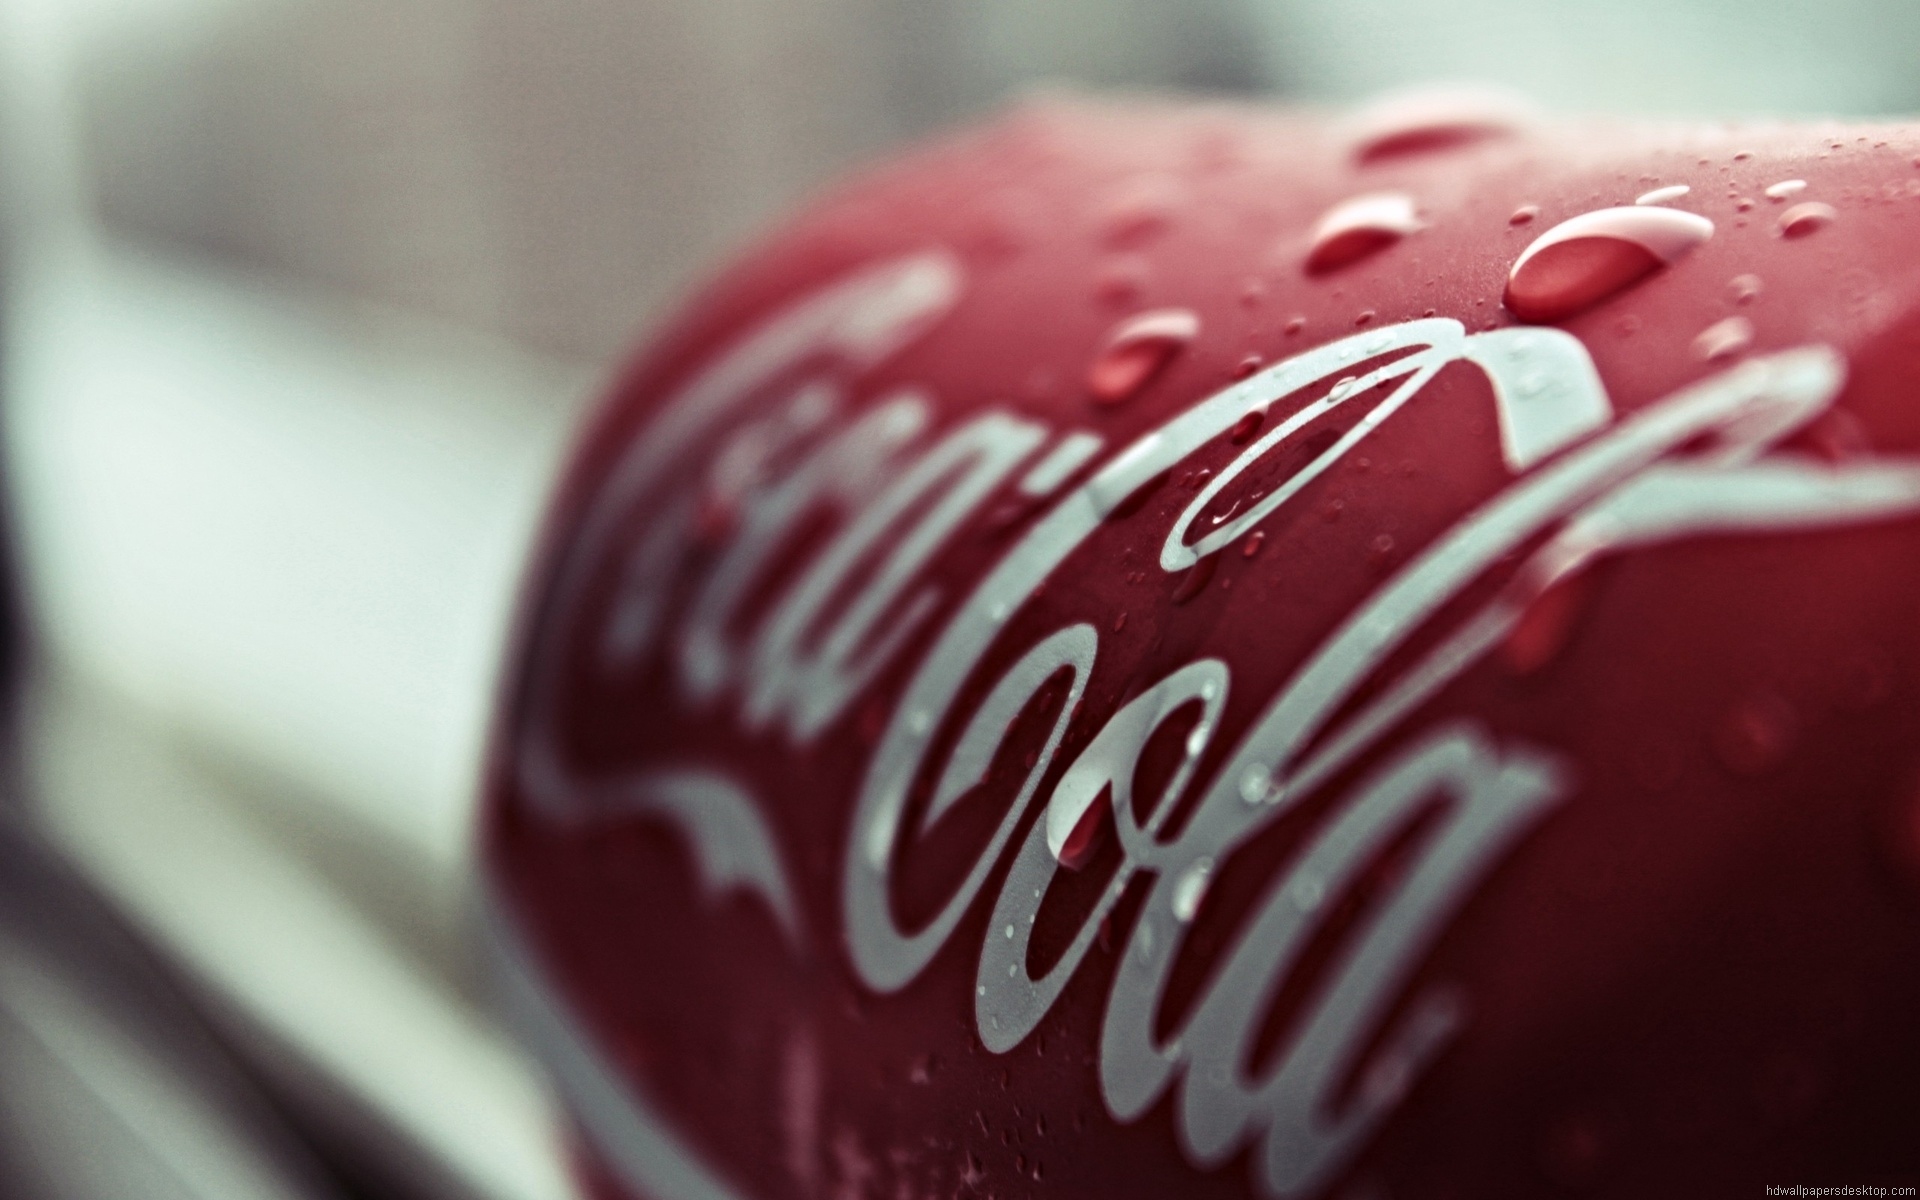 Fonds d'écran Coca Cola : tous les wallpapers Coca Cola